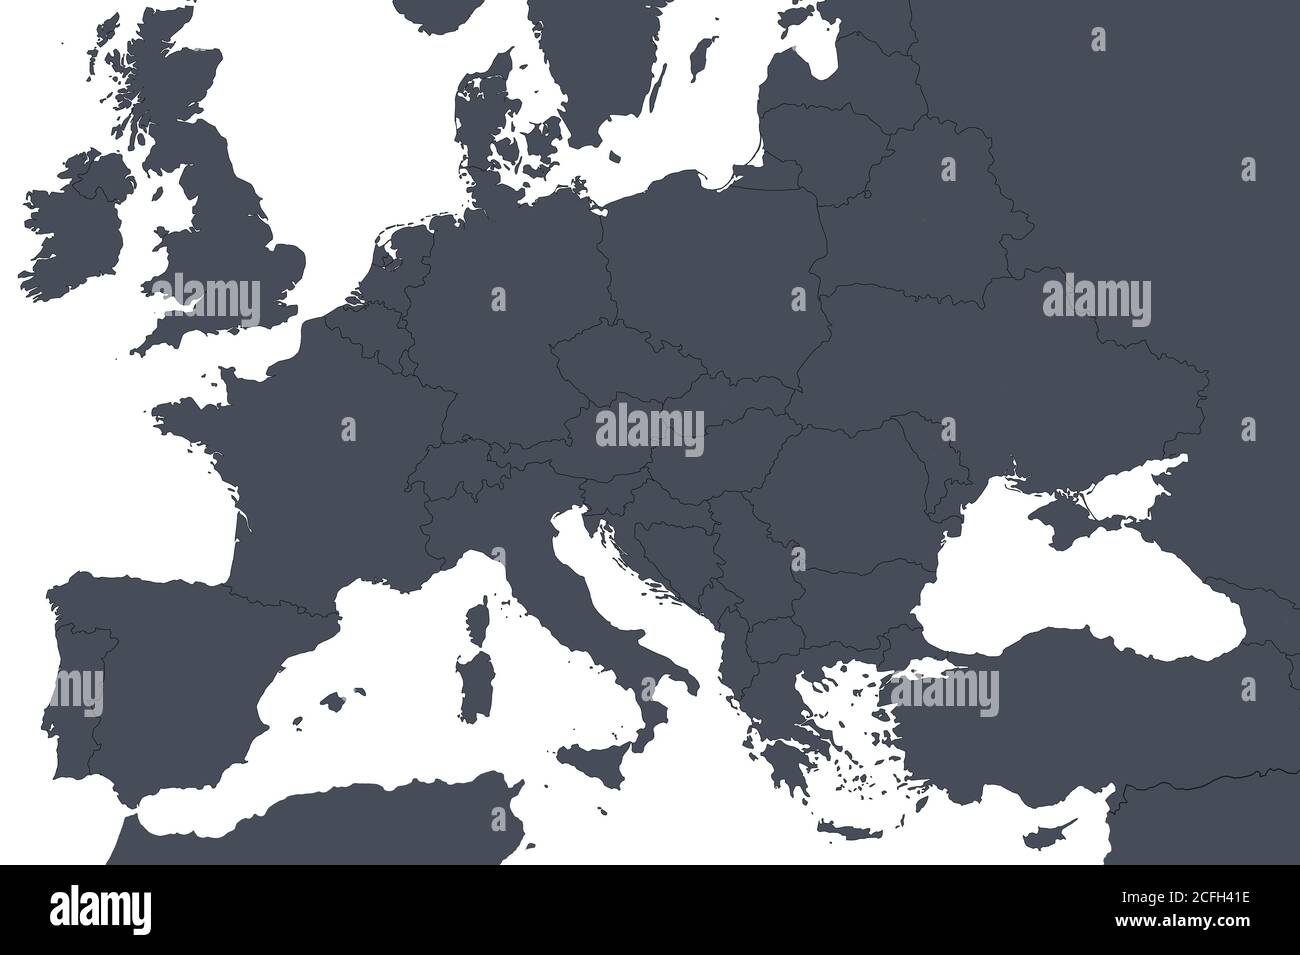 Mappa del profilo europeo con i confini dei paesi. Dettaglio della mappa politica mondiale, regione dell'Europa centrale con silhouette. Terra isolata su fondo bianco, Foto Stock